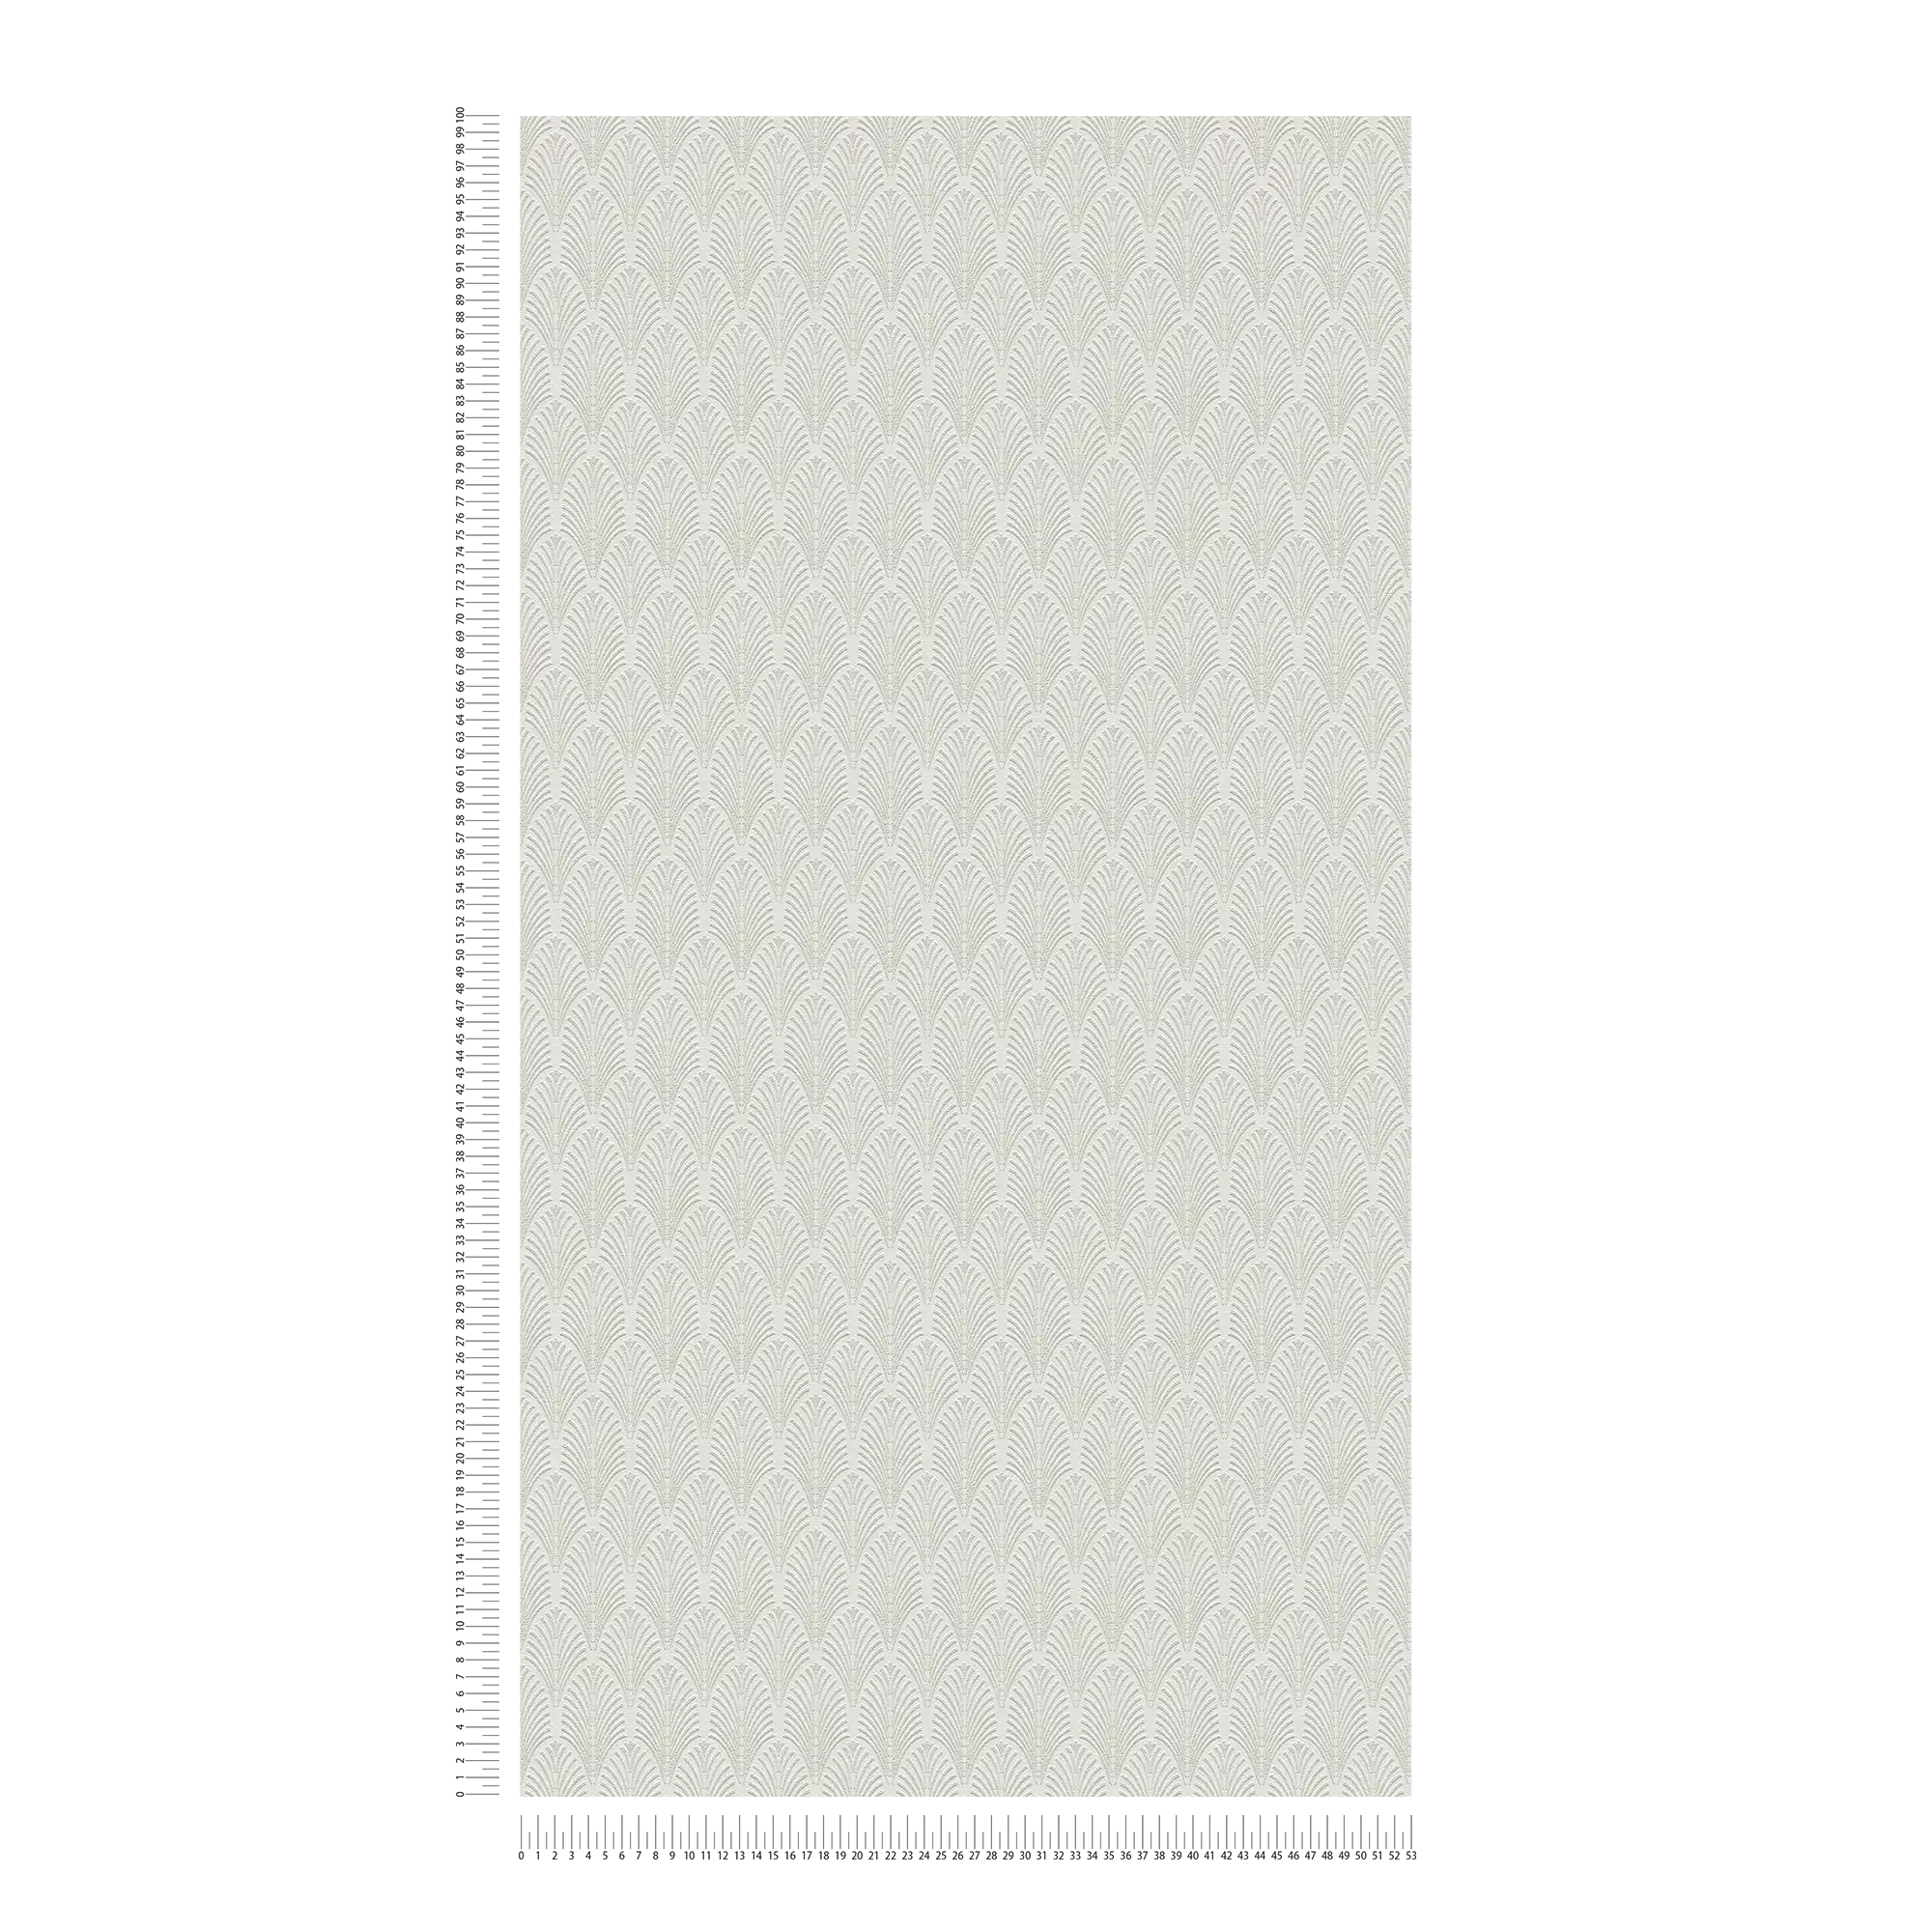             Papel pintado de diseño metálico en estilo art decó - blanco, plata
        